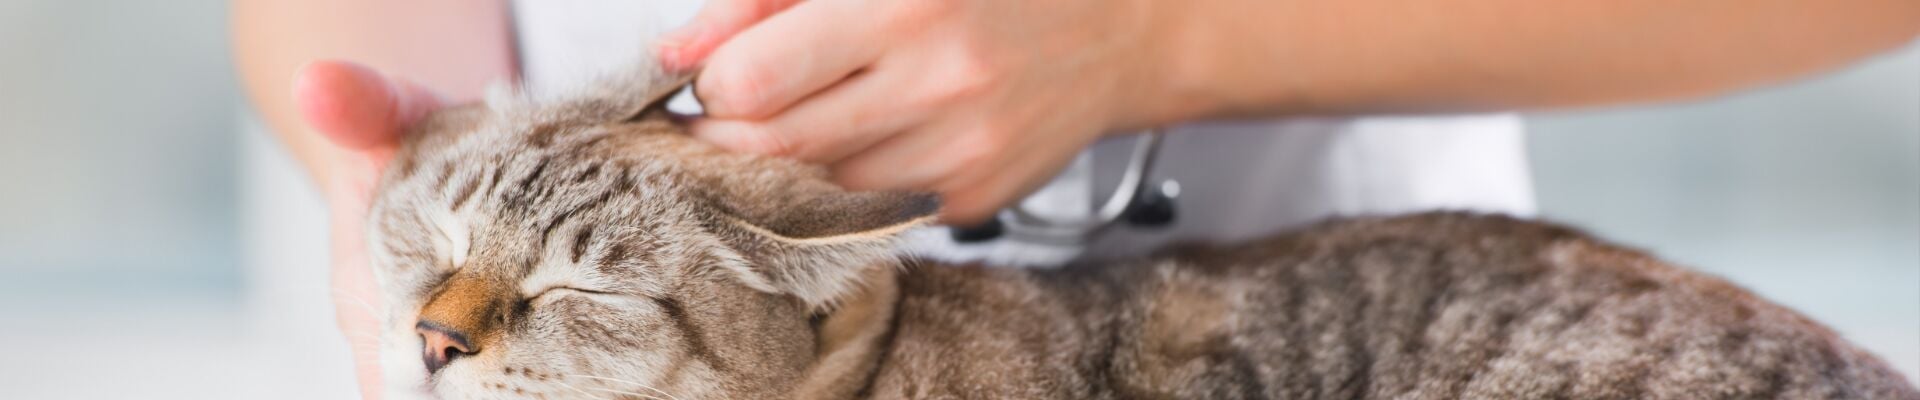 A vet examines a cat's ear